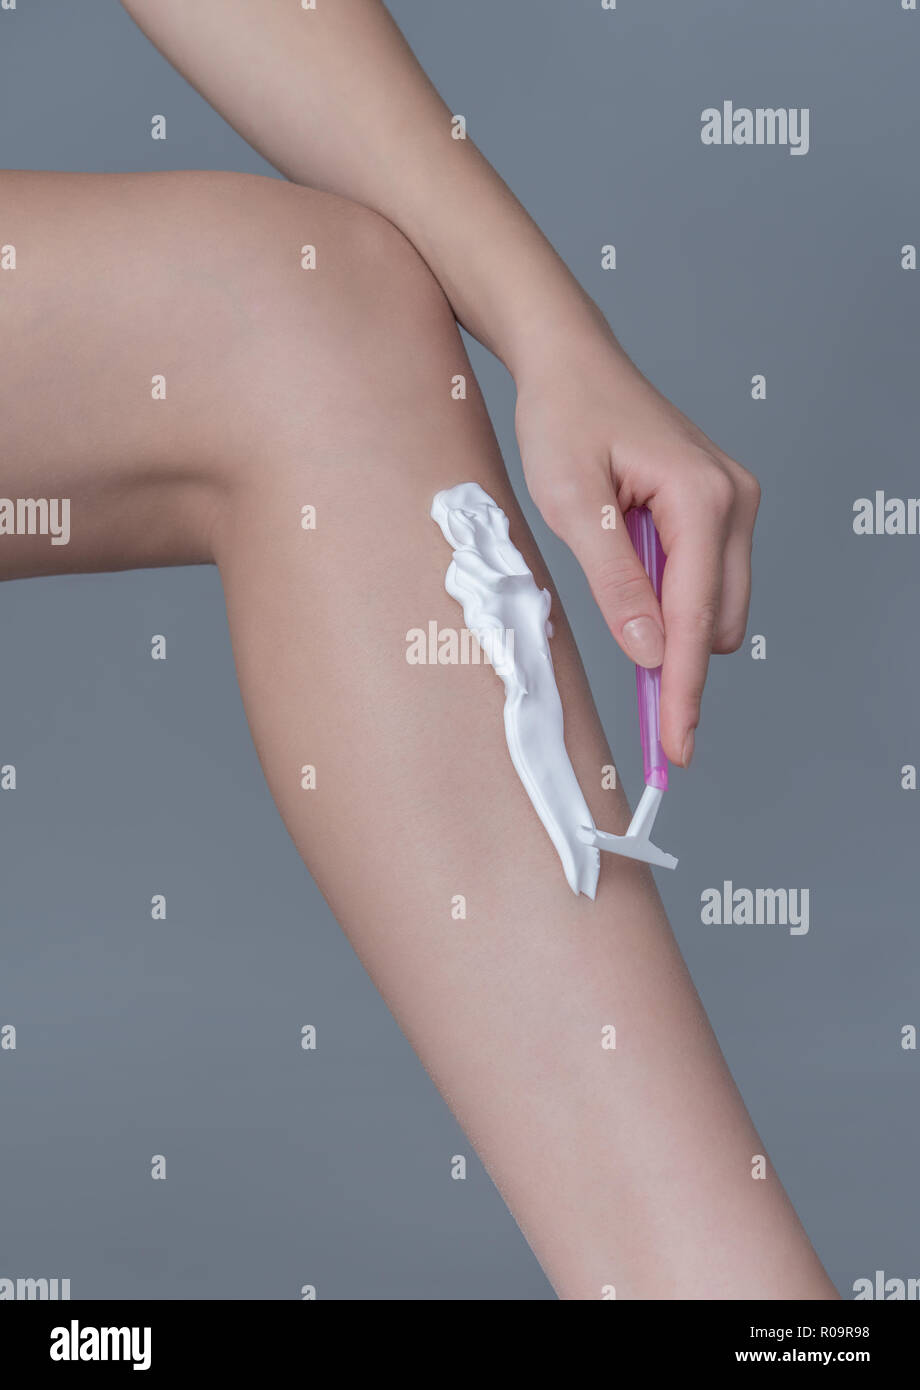 Mädchen rasieren ihre Beine mit Rasierklinge und Rasierschaum  Stockfotografie - Alamy